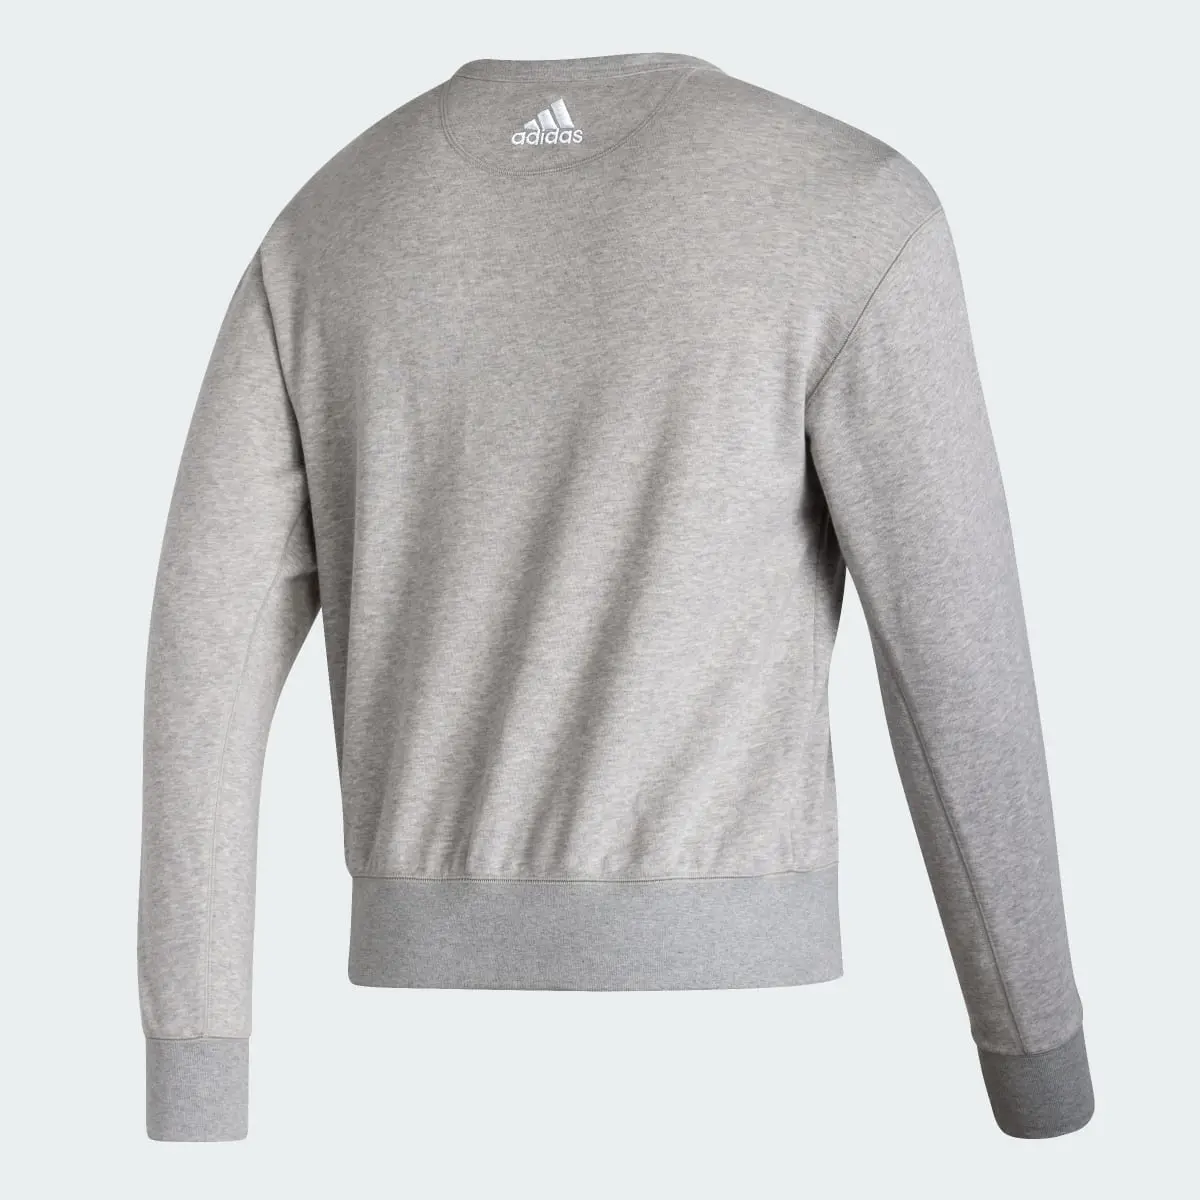 Adidas Texas A&M Long Sleeve Sweatshirt. 2